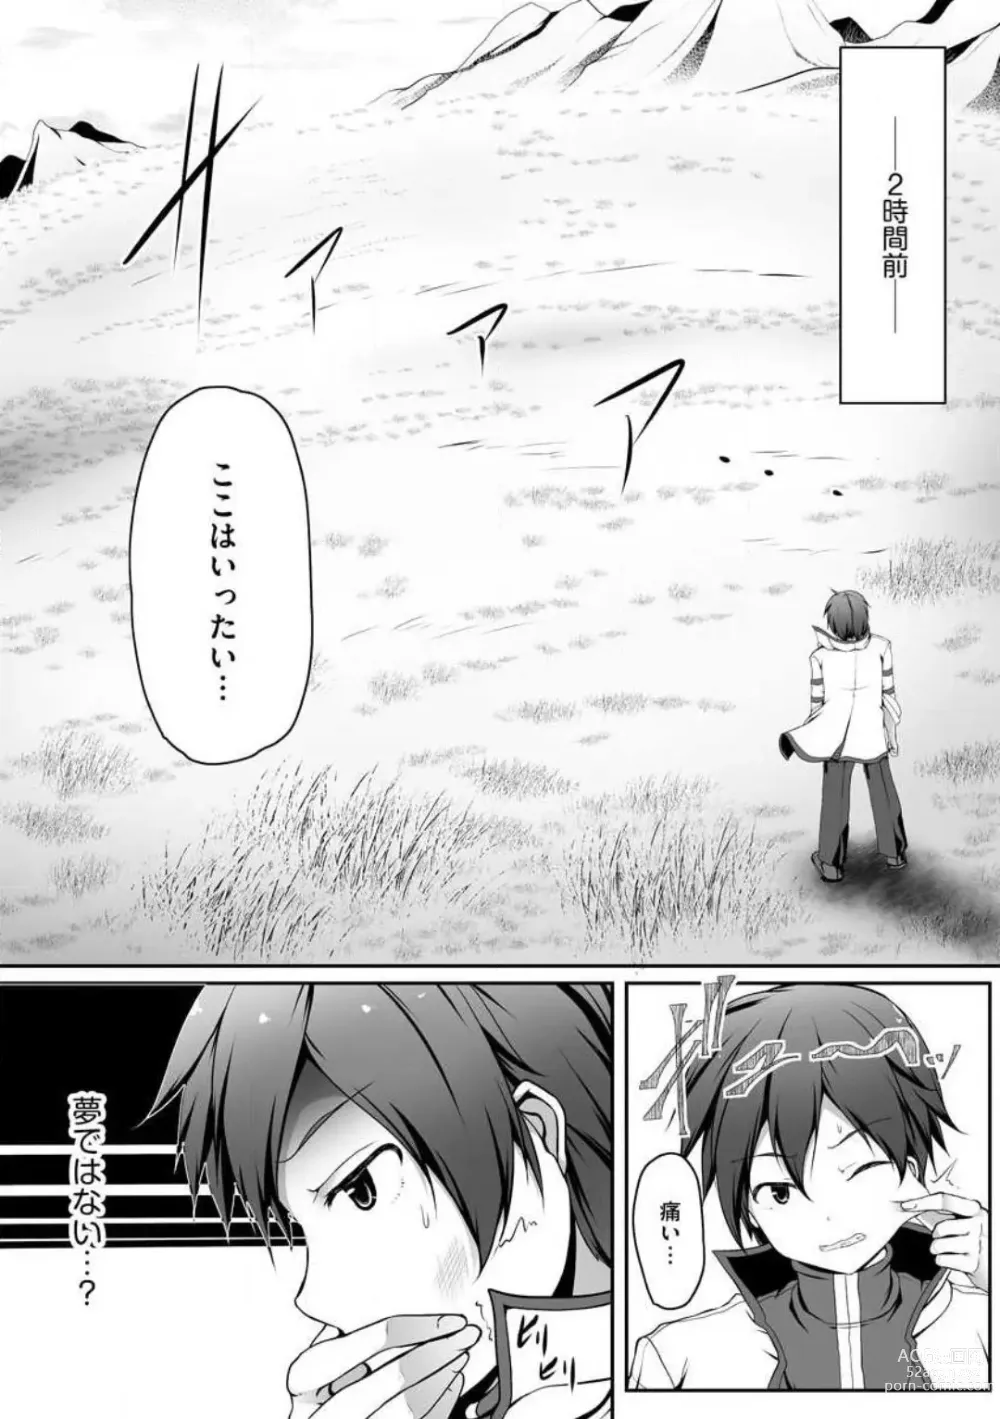 Page 4 of manga Cheat Skill Shihai